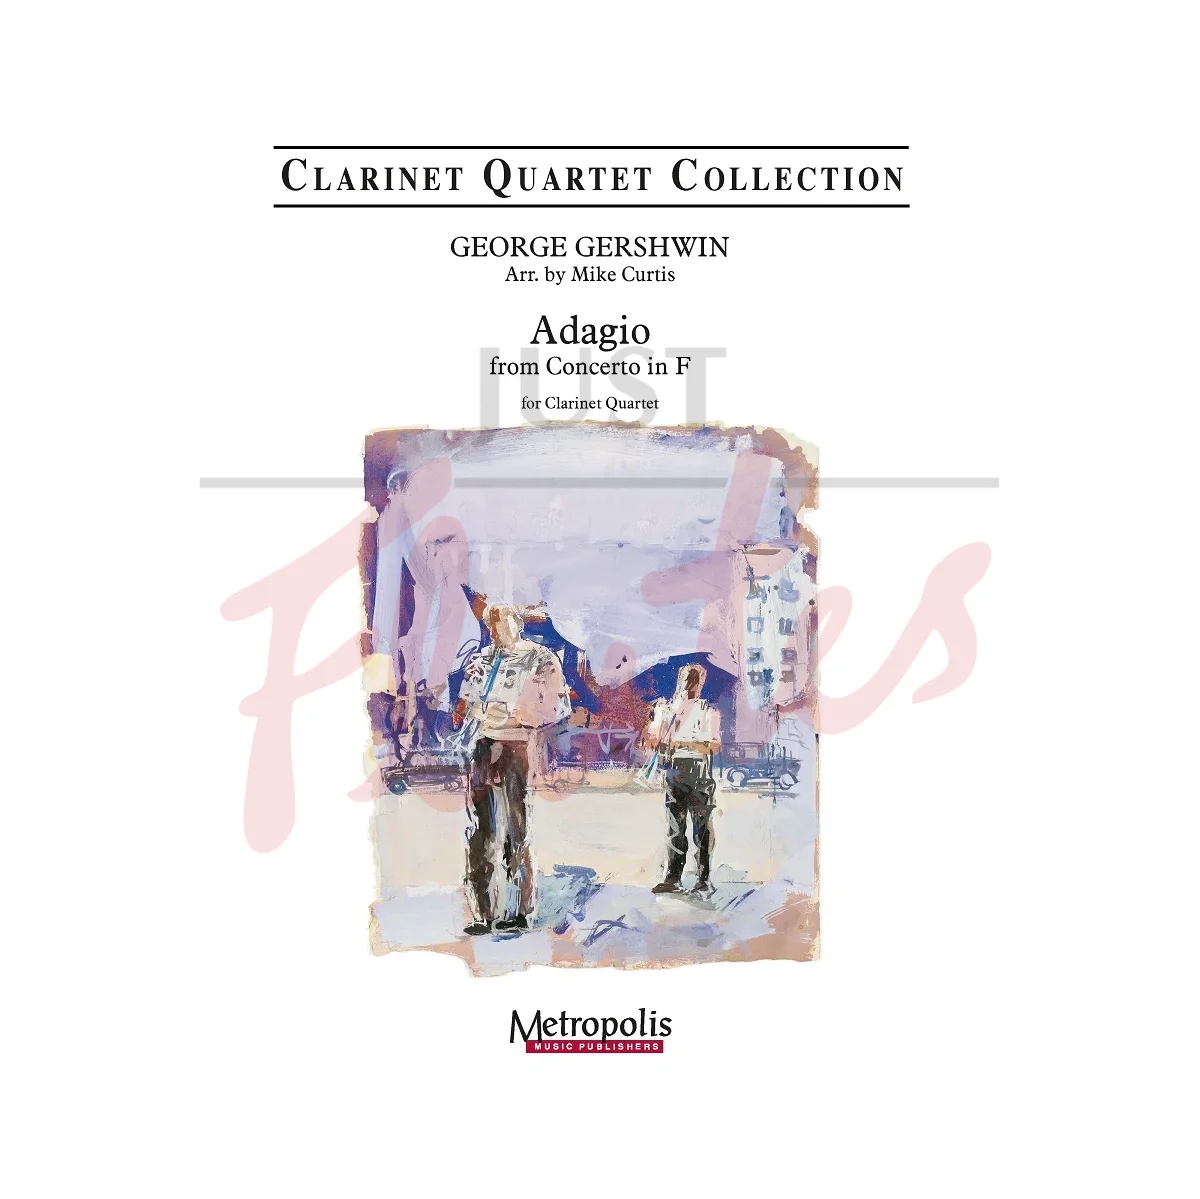 Adagio from Concerto in F for Clarinet Quartet